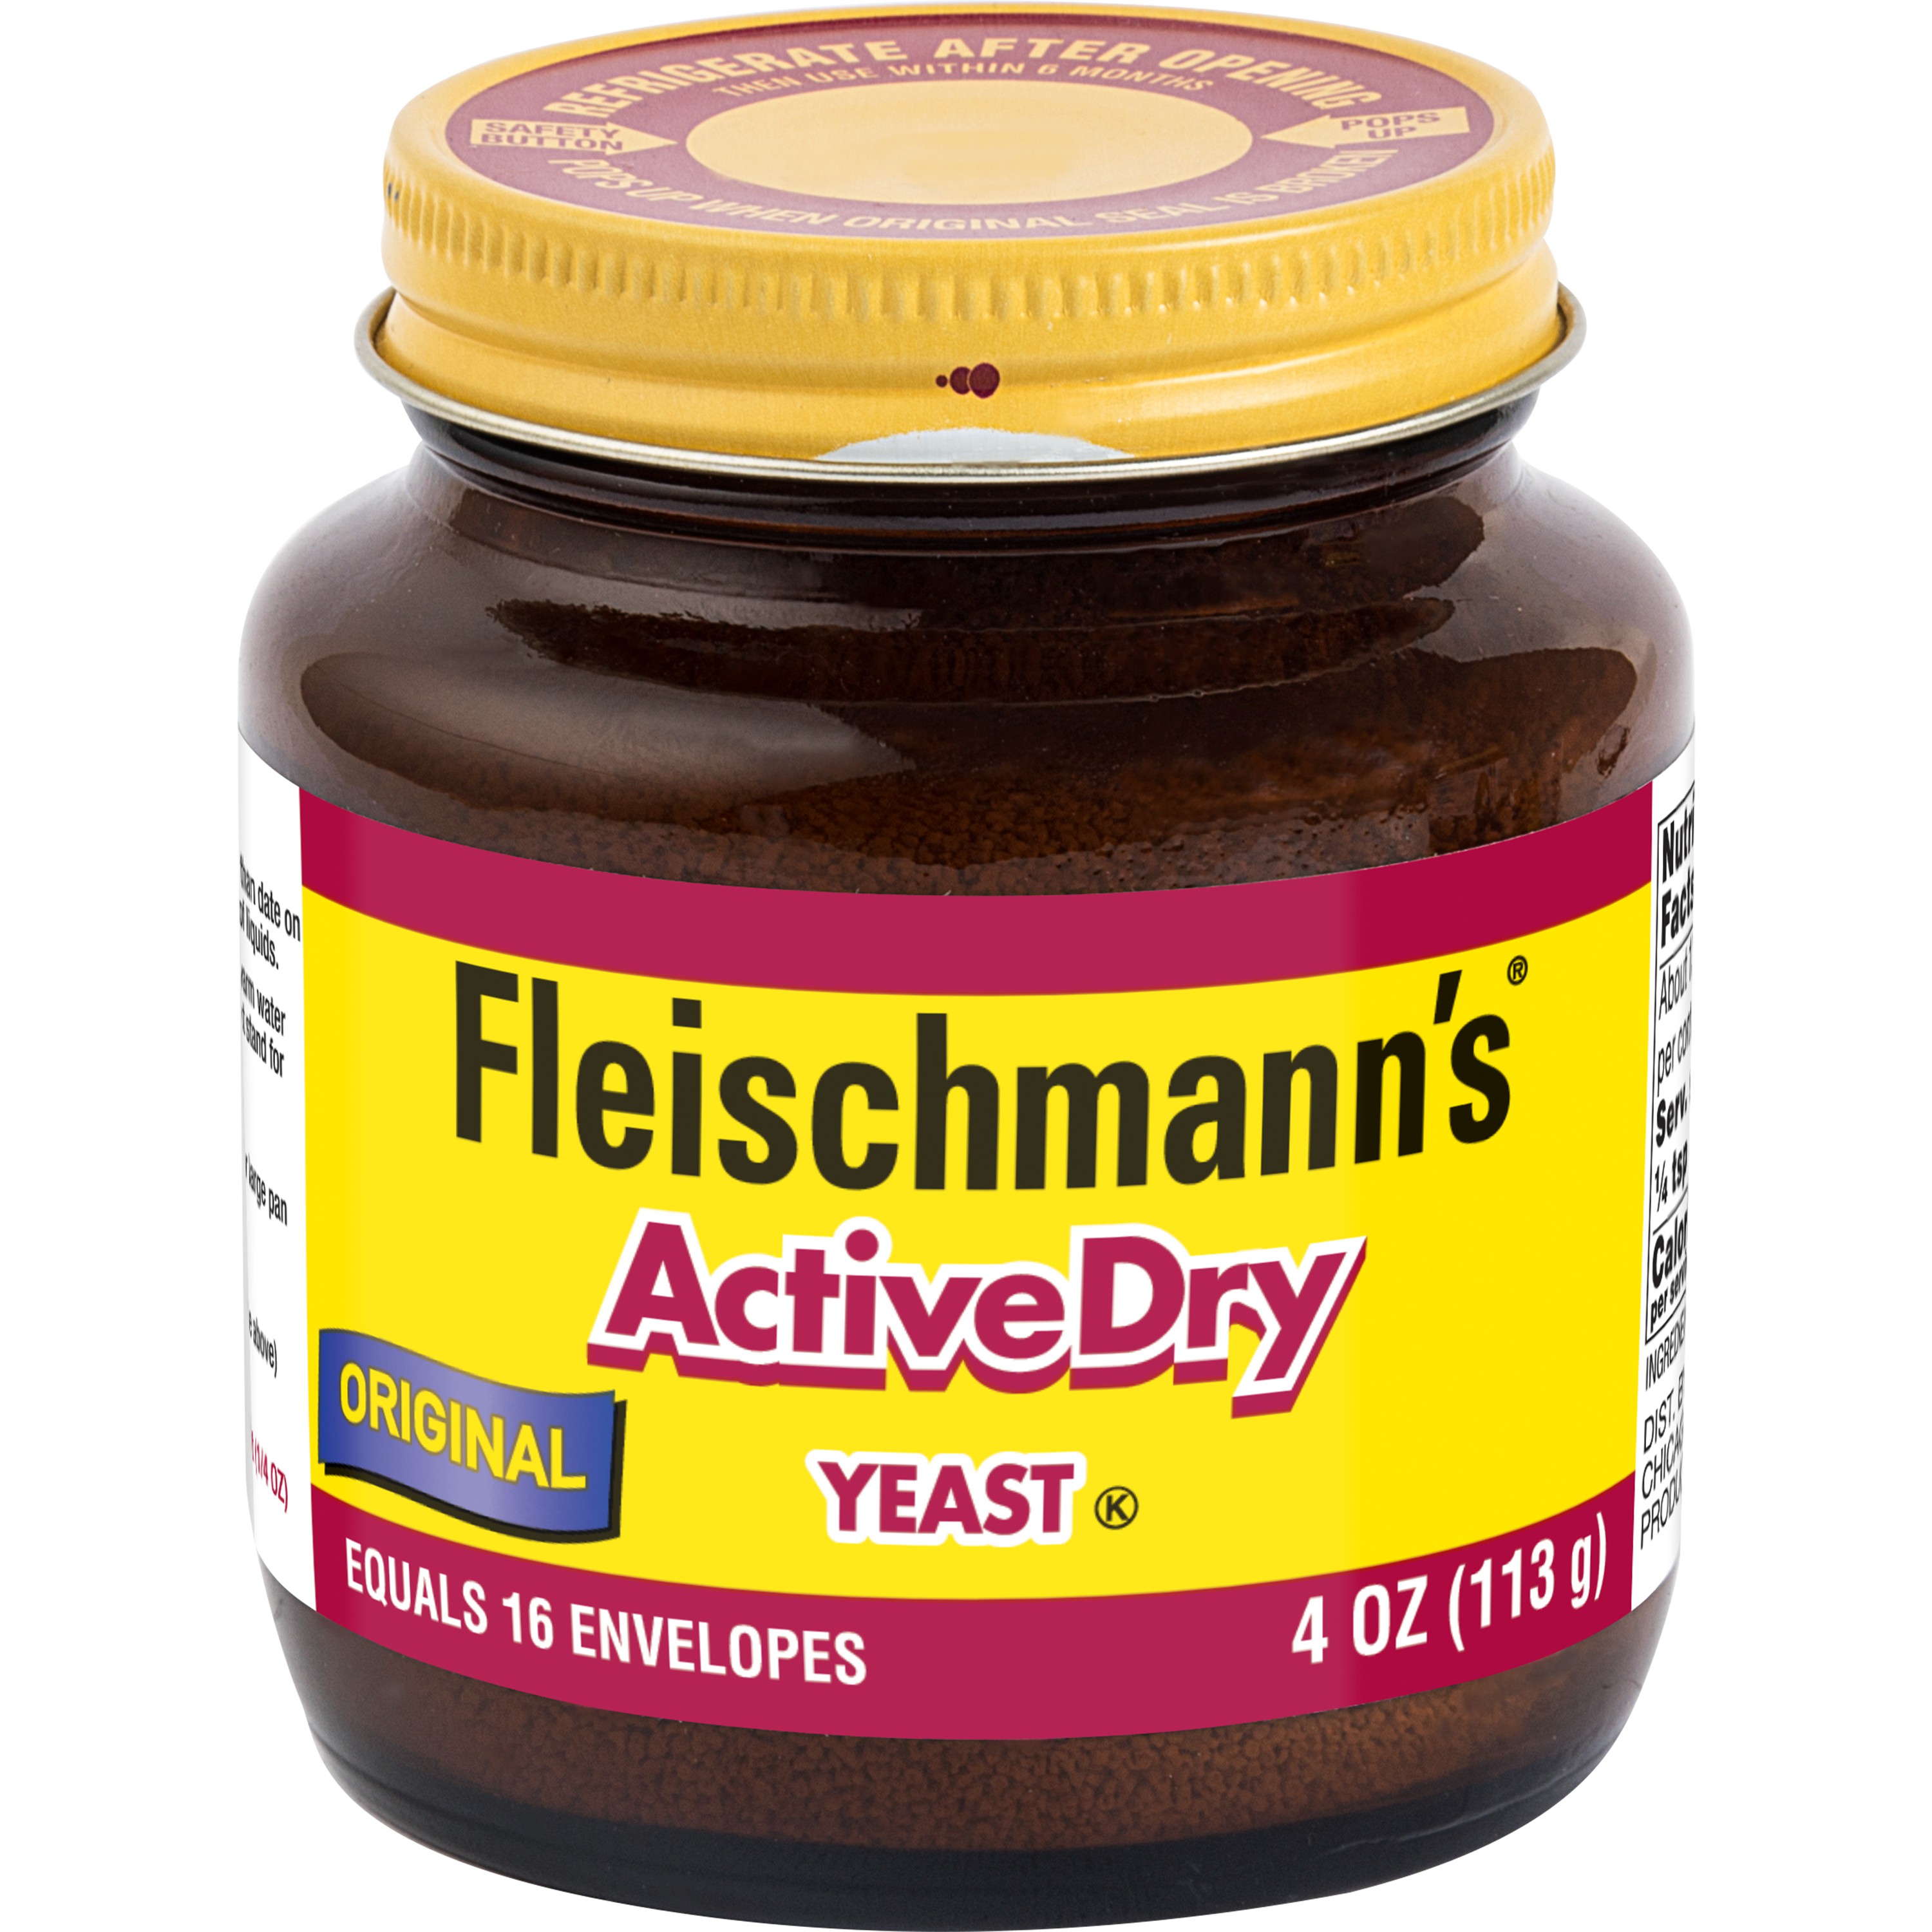 Fleischmann's Active Dry Yeast, 4 Oz - image 1 of 9